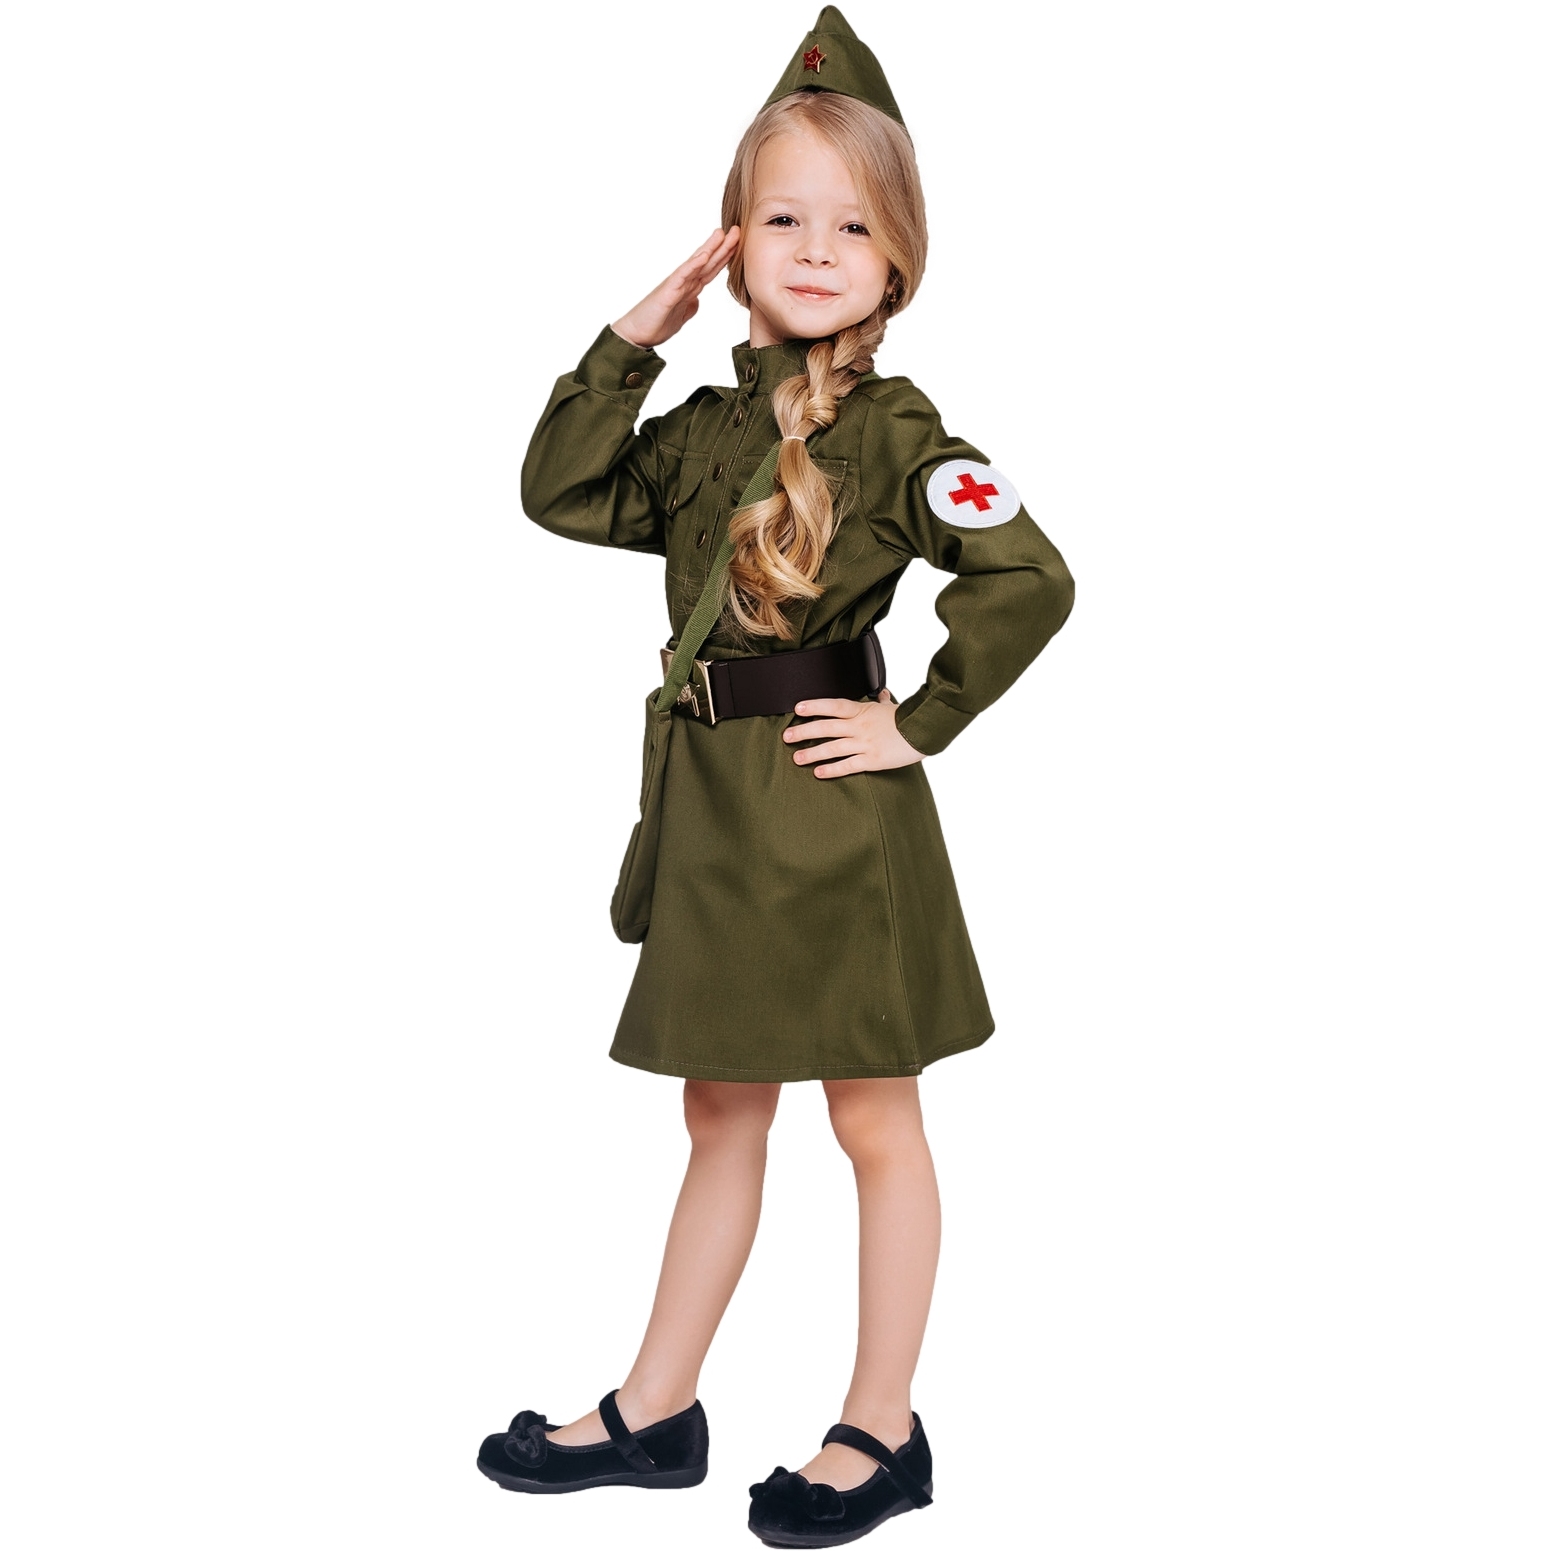 Карнавальный костюм "Военная медсестра" (гимнастерка, юбка, пилотка, ремень, сумка) размер 134-68